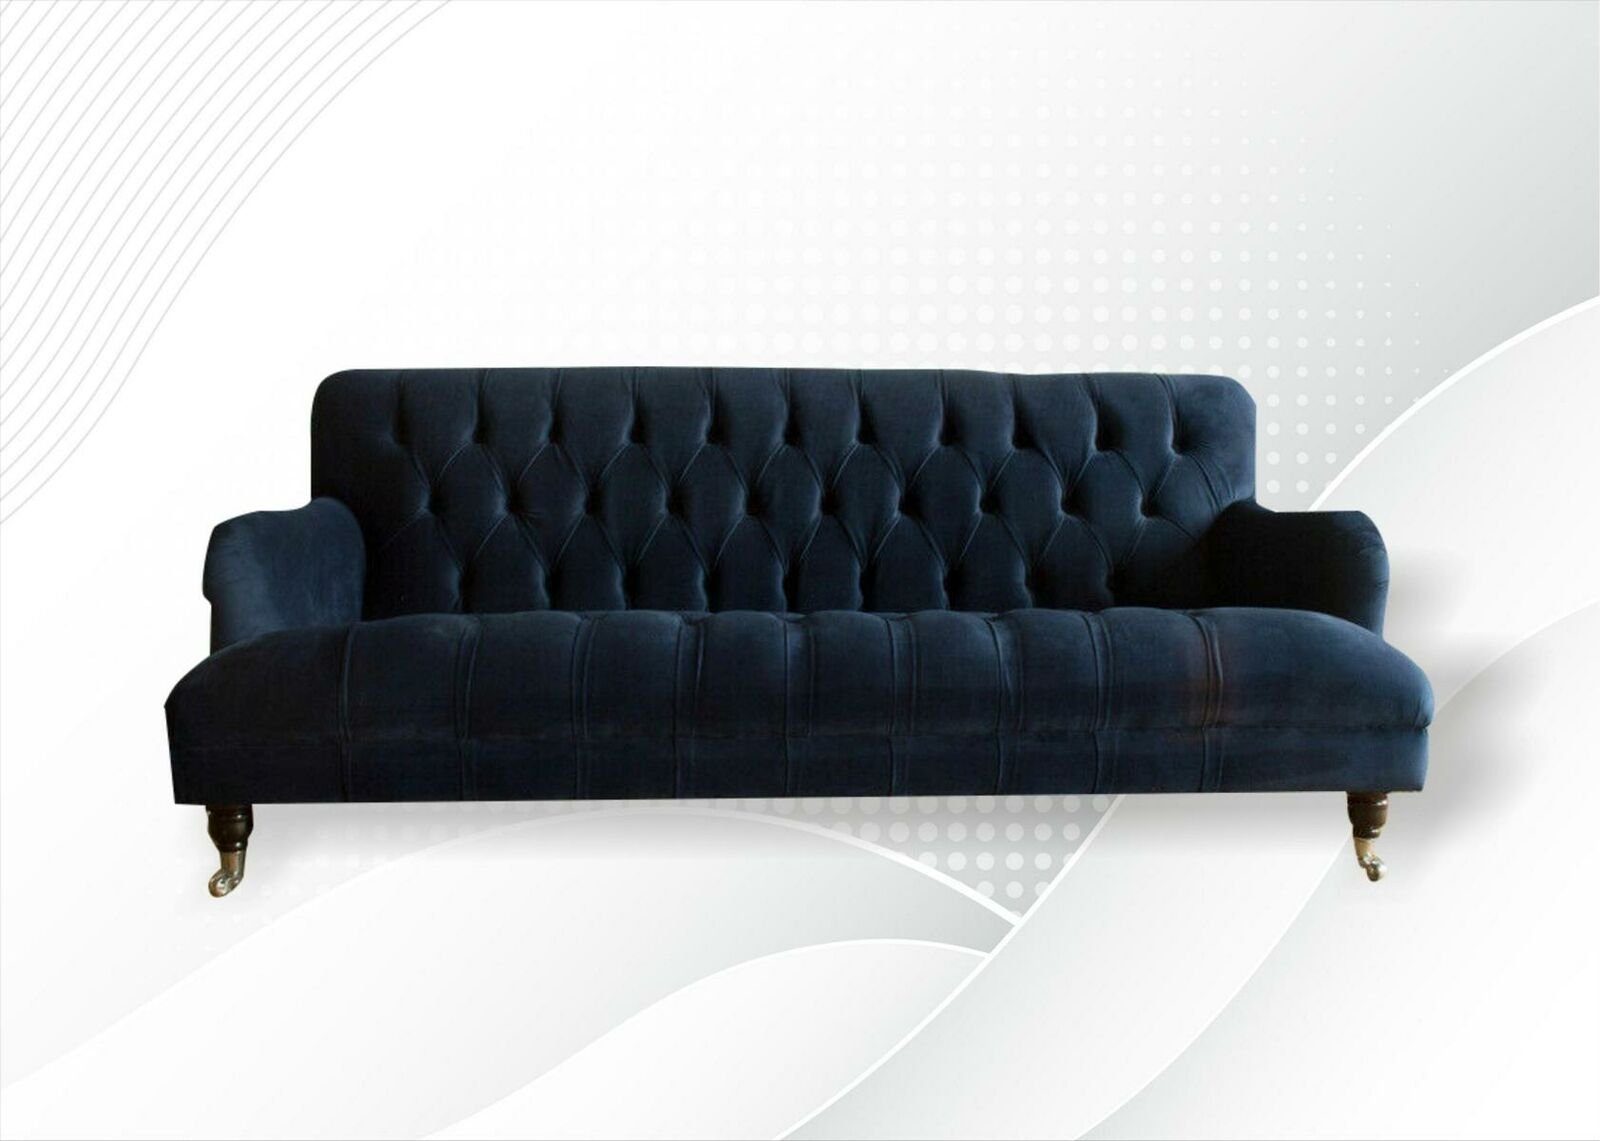 JVmoebel Chesterfield-Sofa, Chesterfield Blaue Couchen Textil Sofa Stoff Wohnzimmer Sofas Möbel Neu Modern